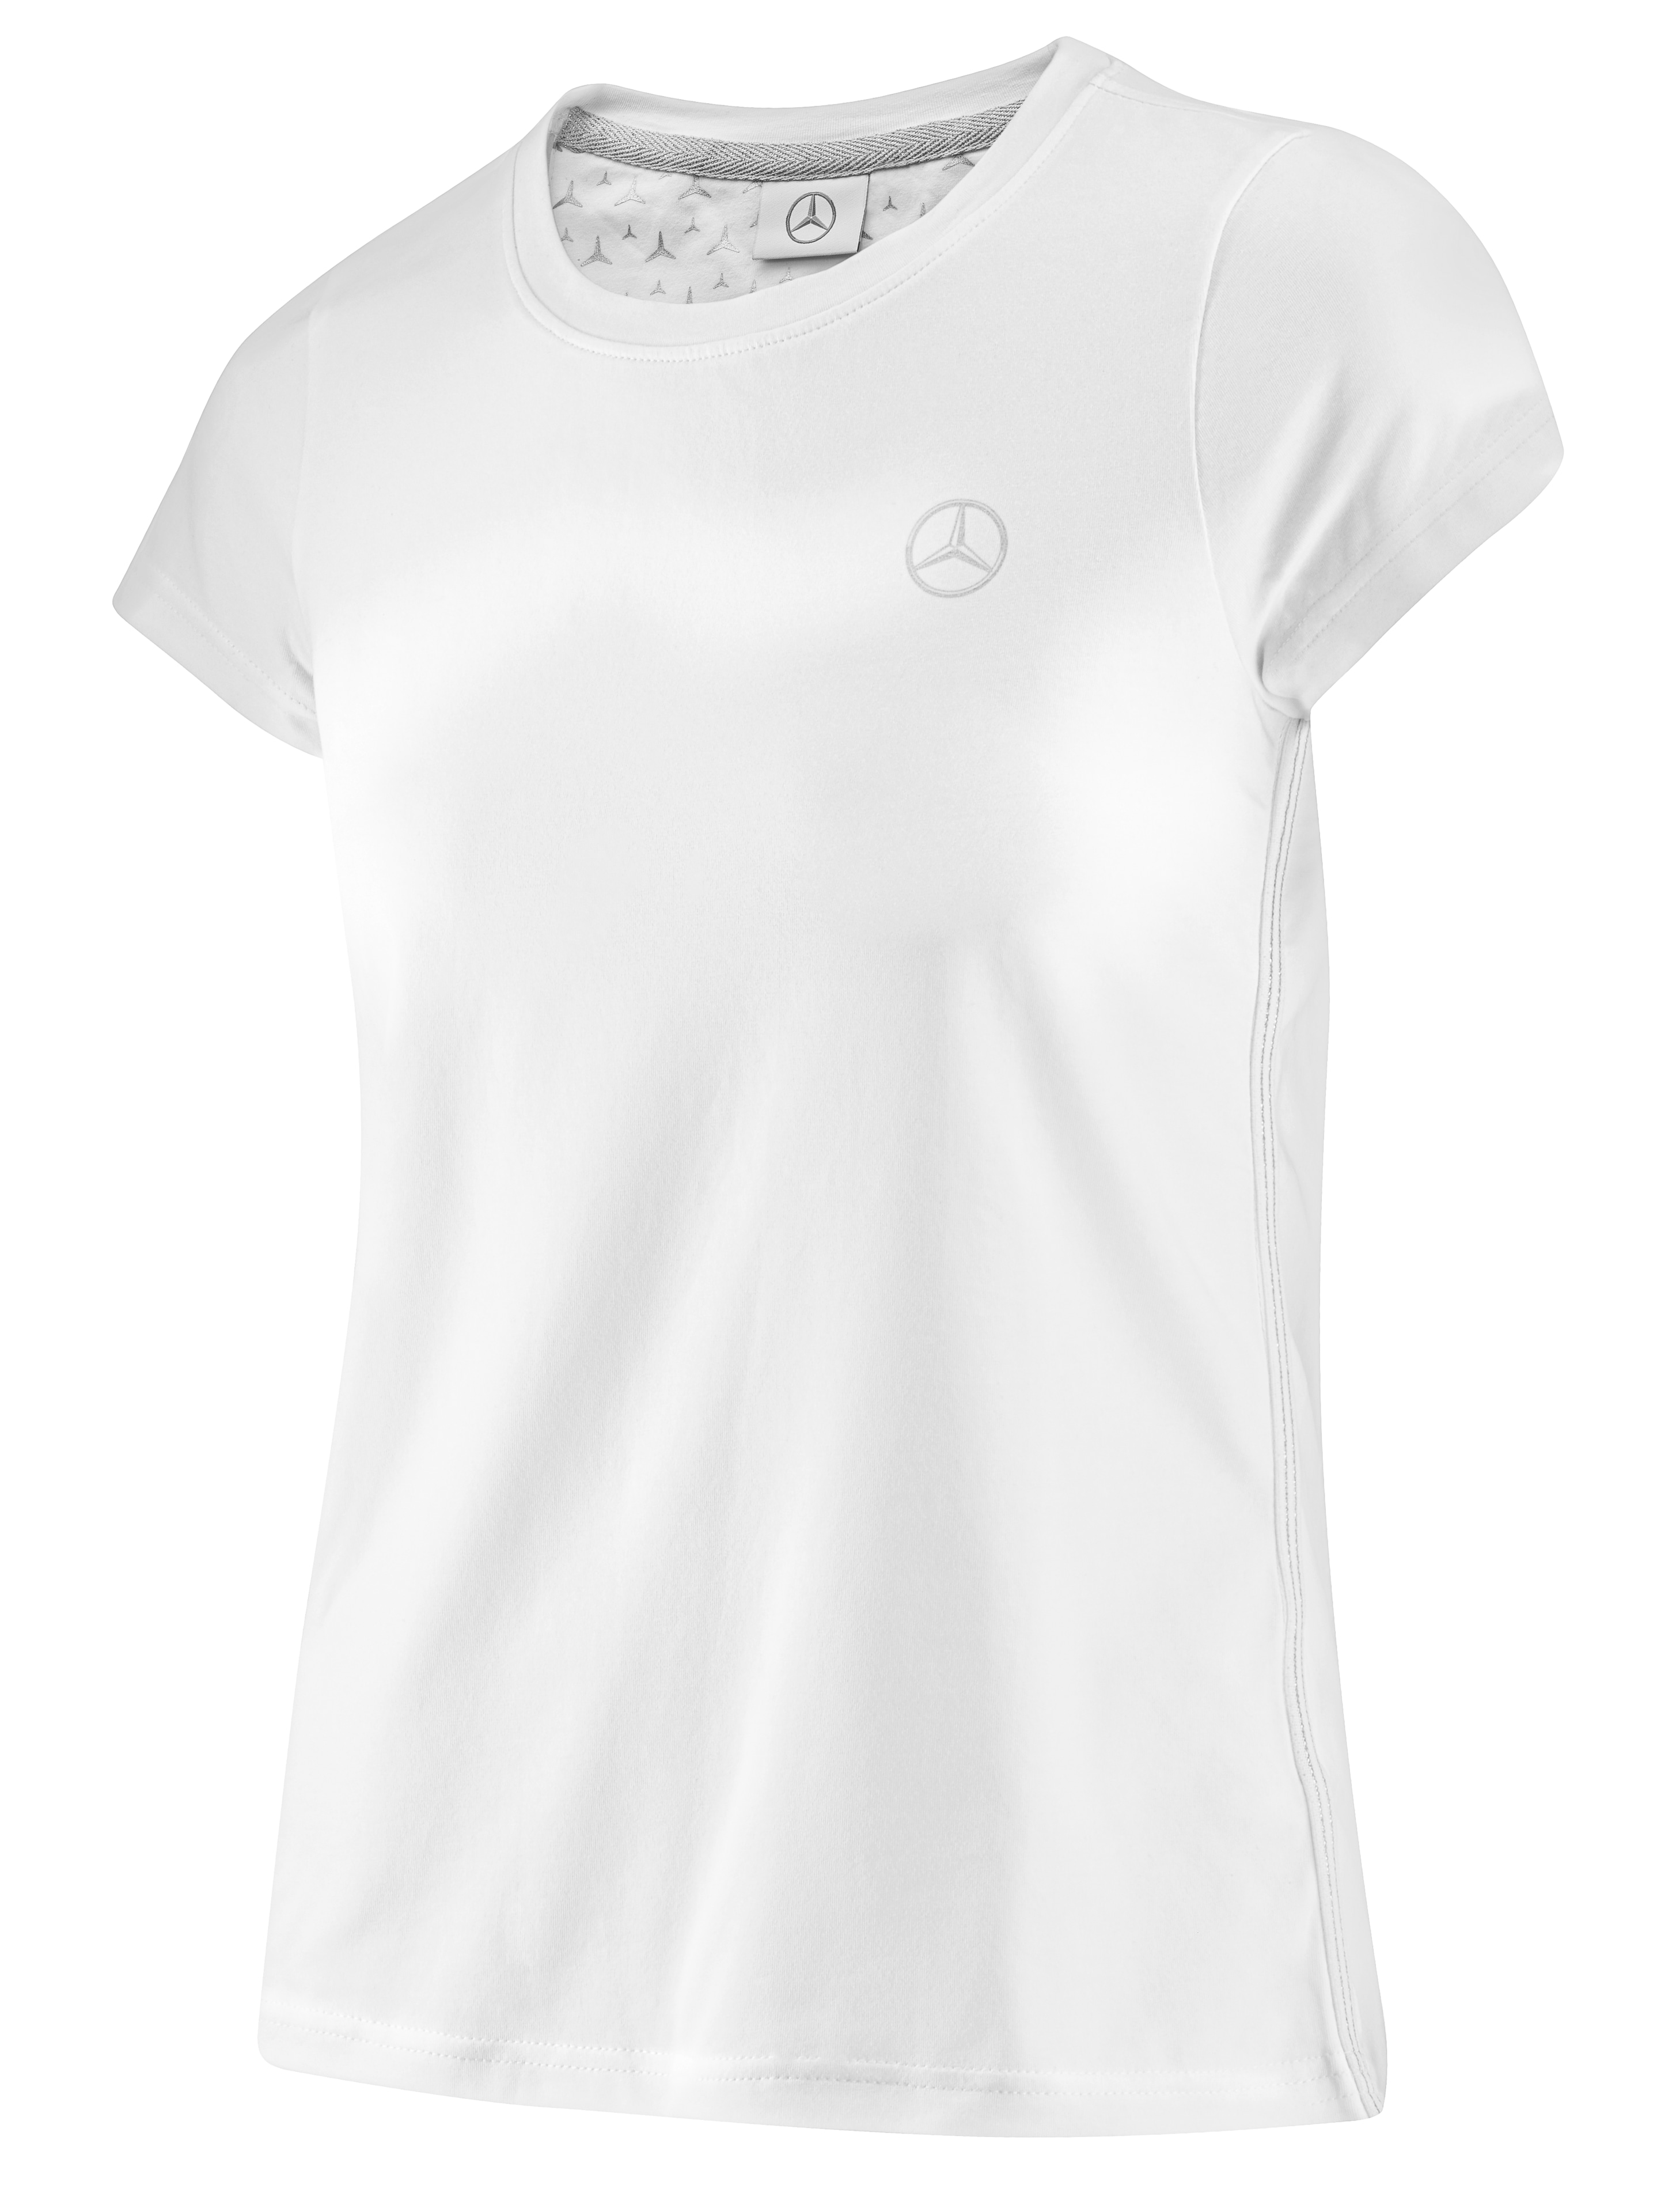 T-Shirt Damen - weiß, XL